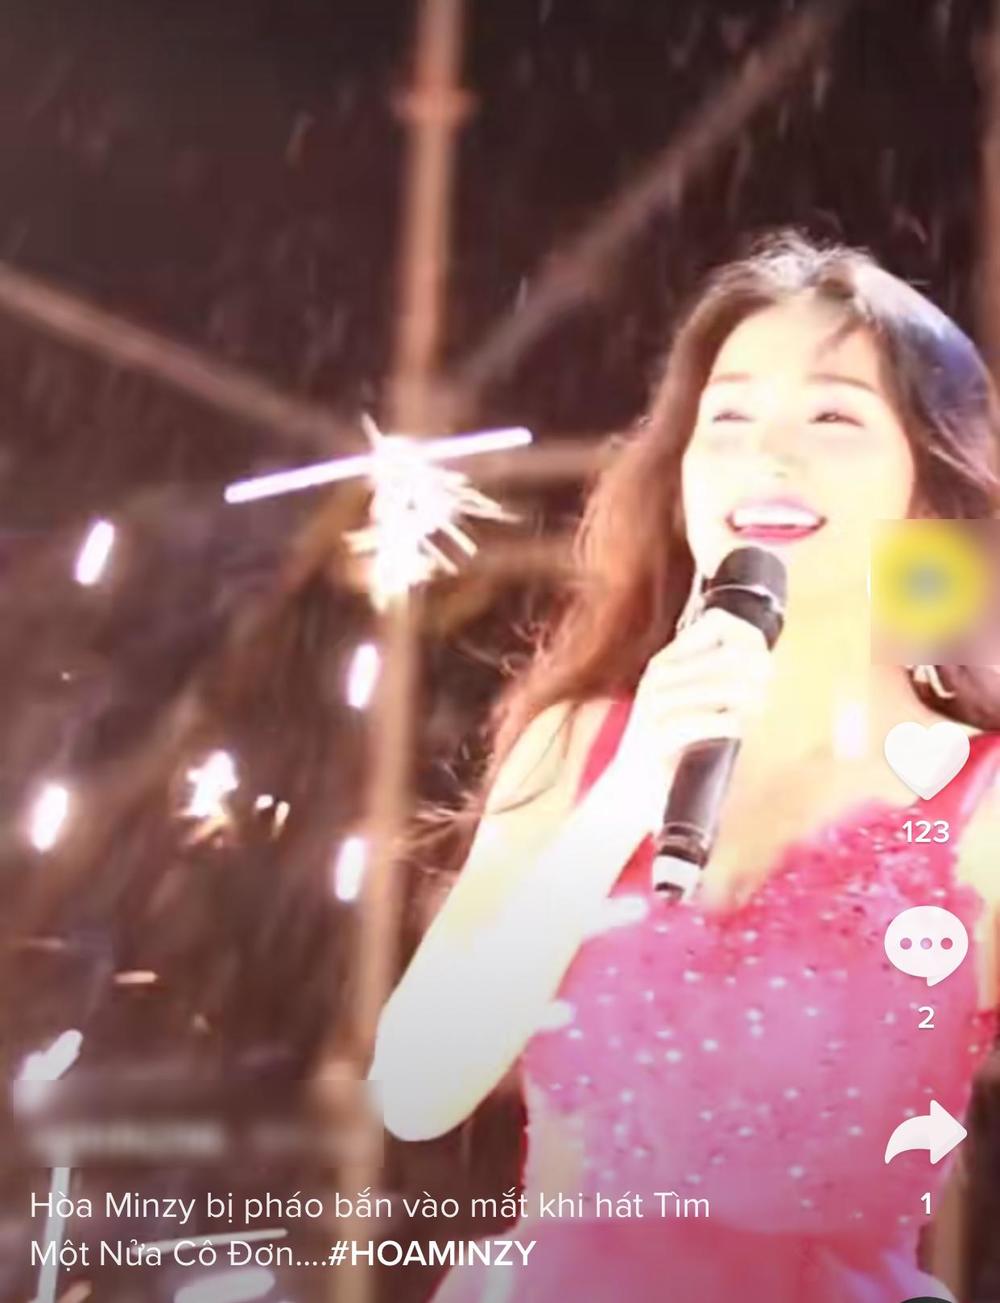  
Hòa Minzy gặp sự cố khi đang hát live trên sân khấu. (Ảnh: Chụp màn hình)